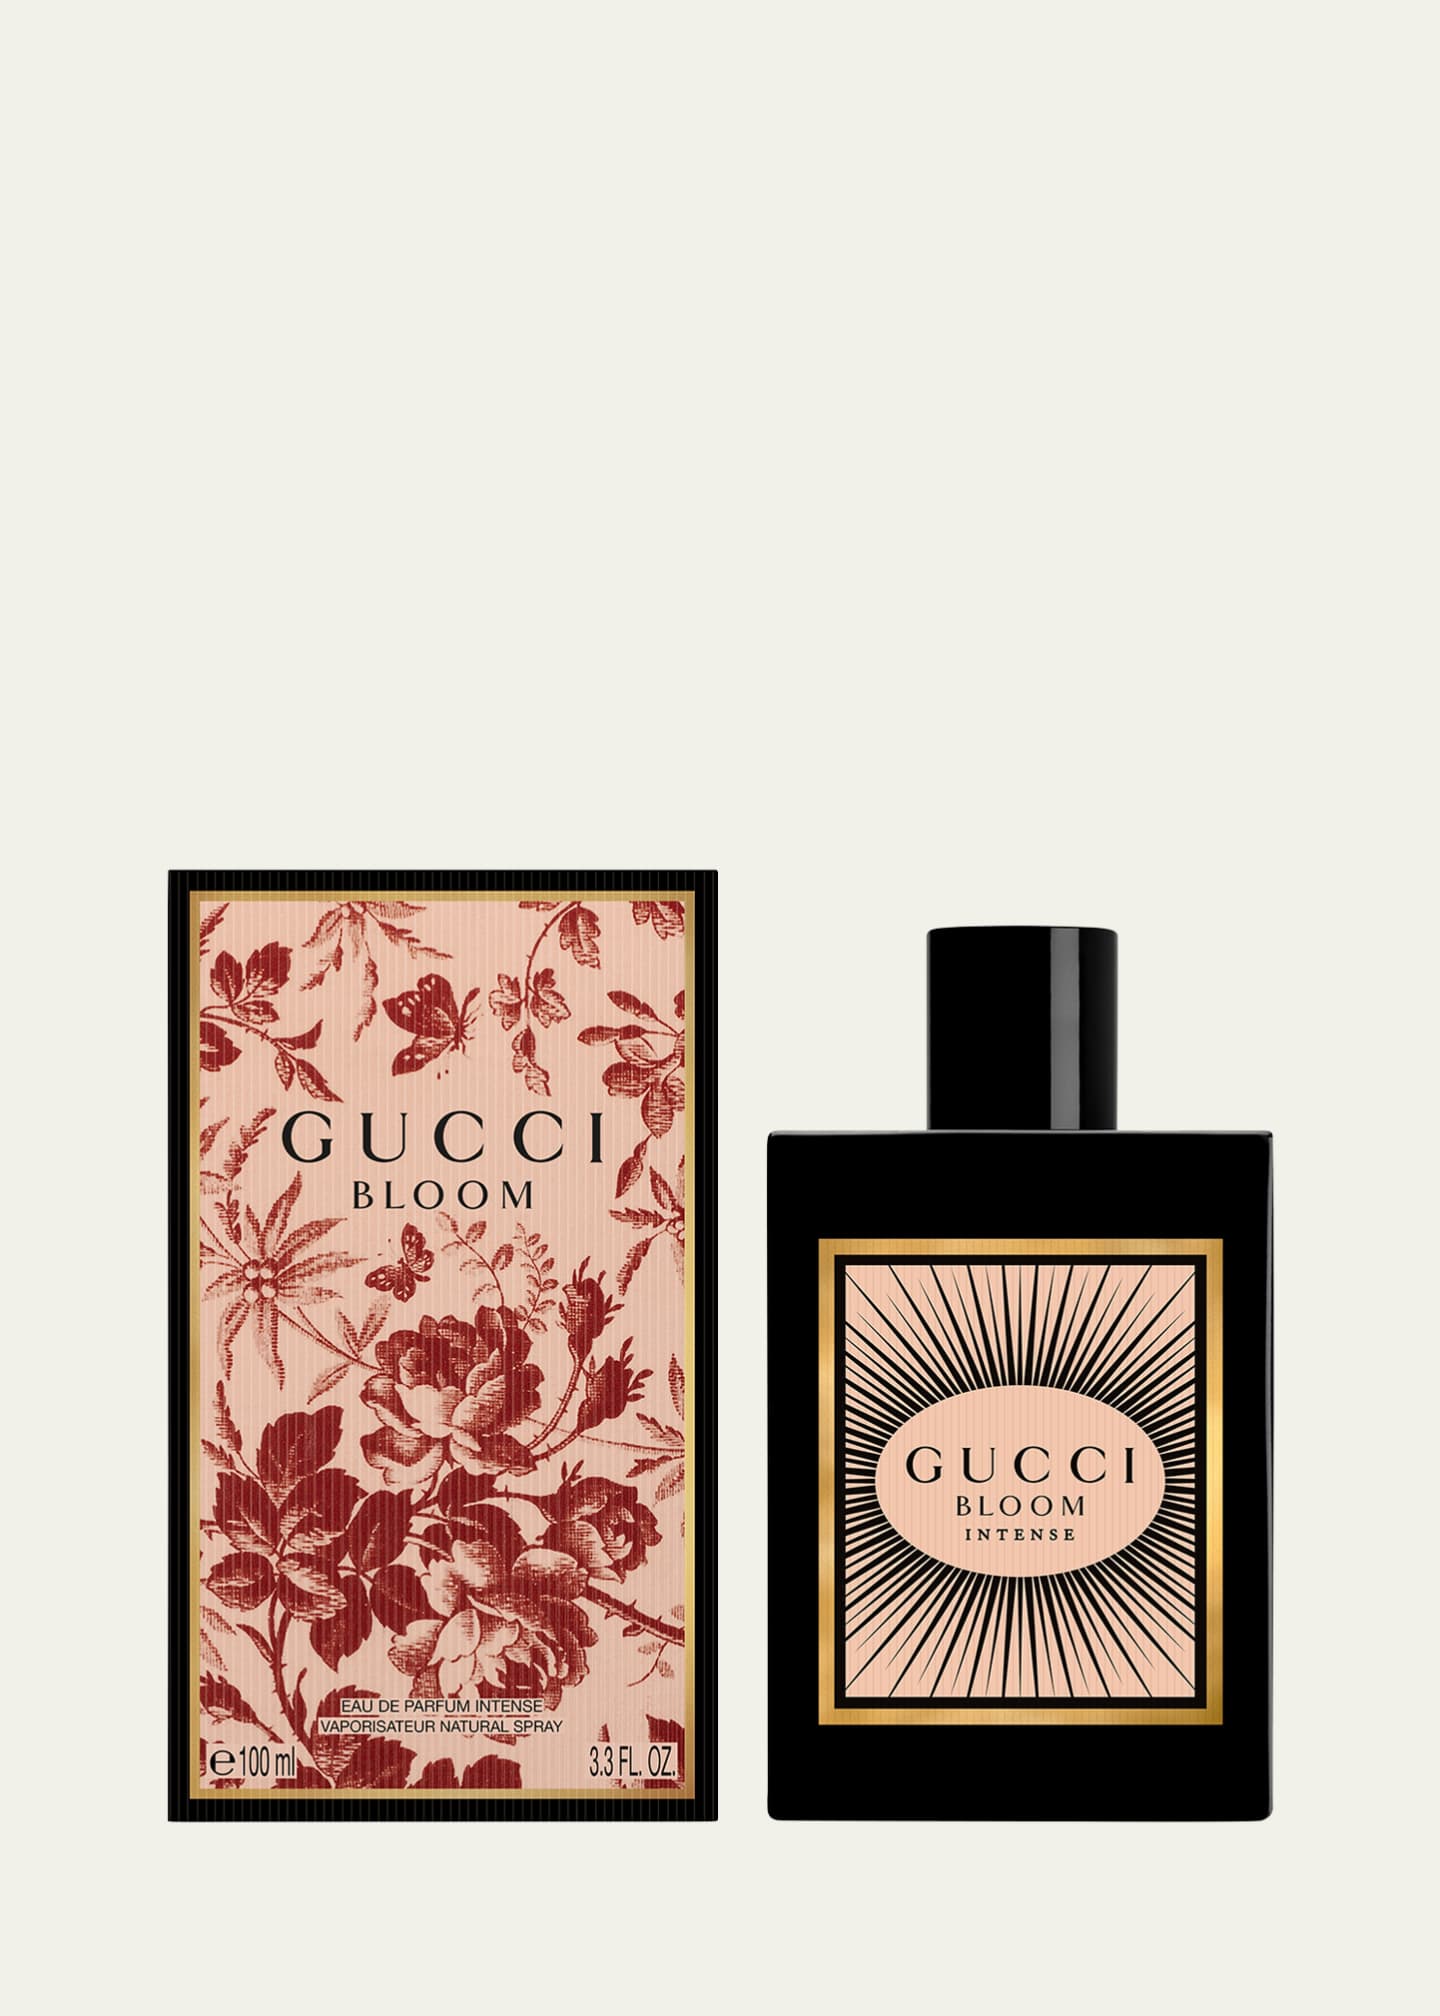 Gucci Bloom Eau De Parfum, Perfume for Women, 3.3 Oz